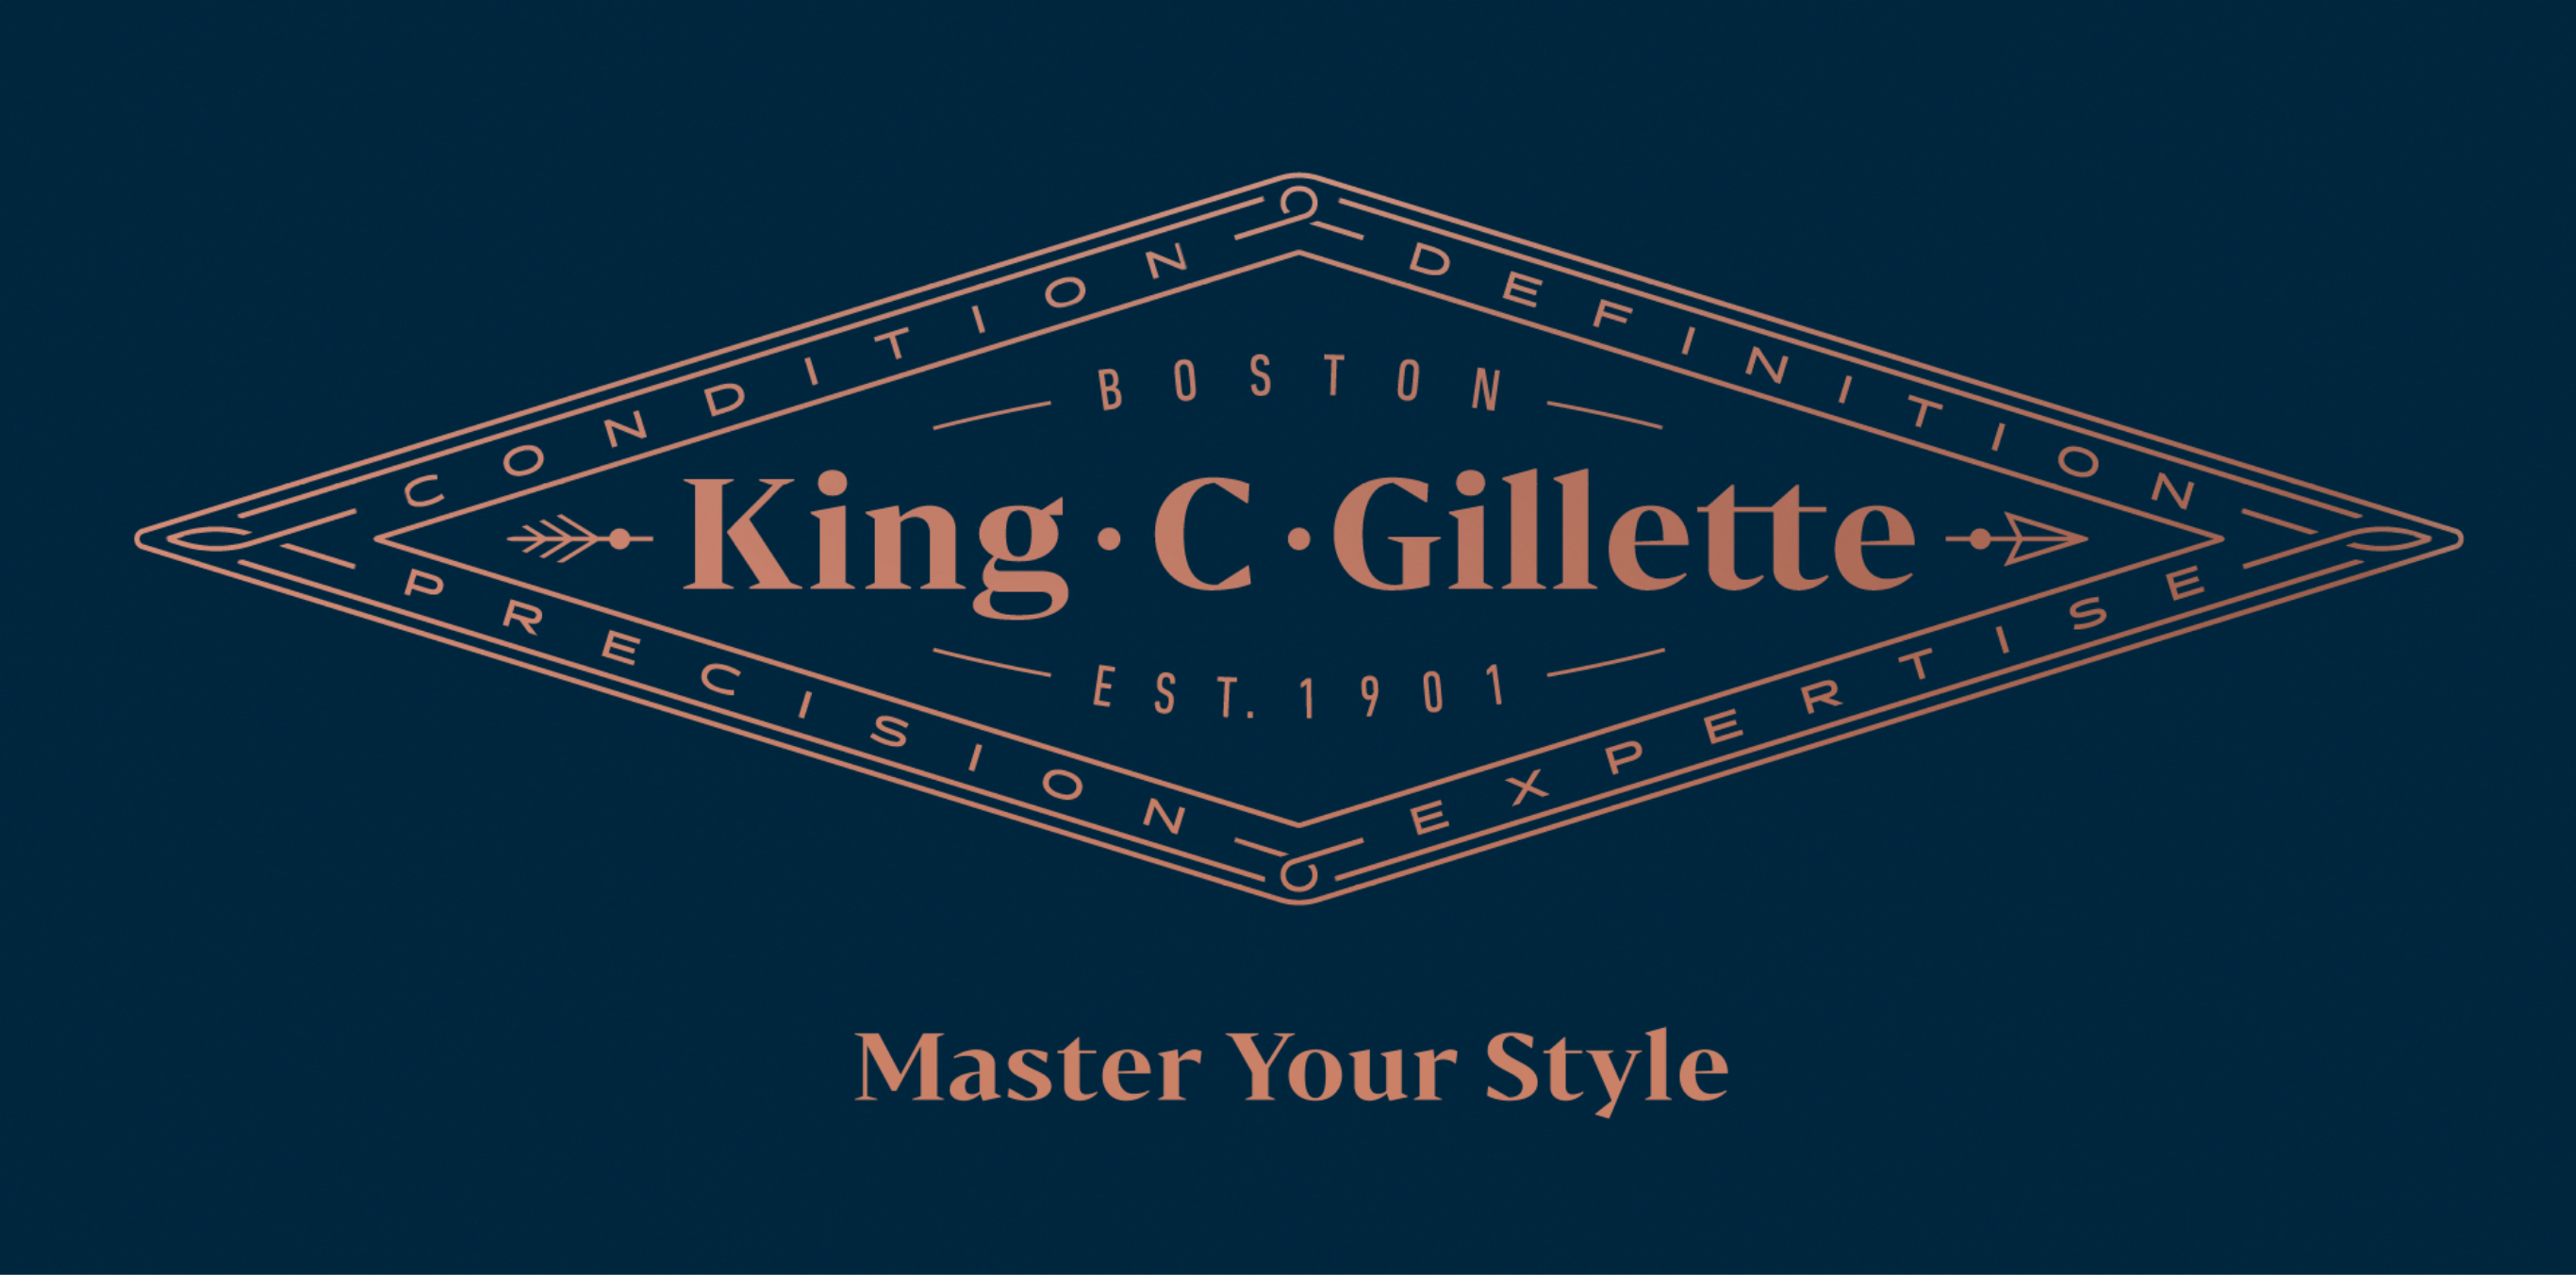 Gillette King